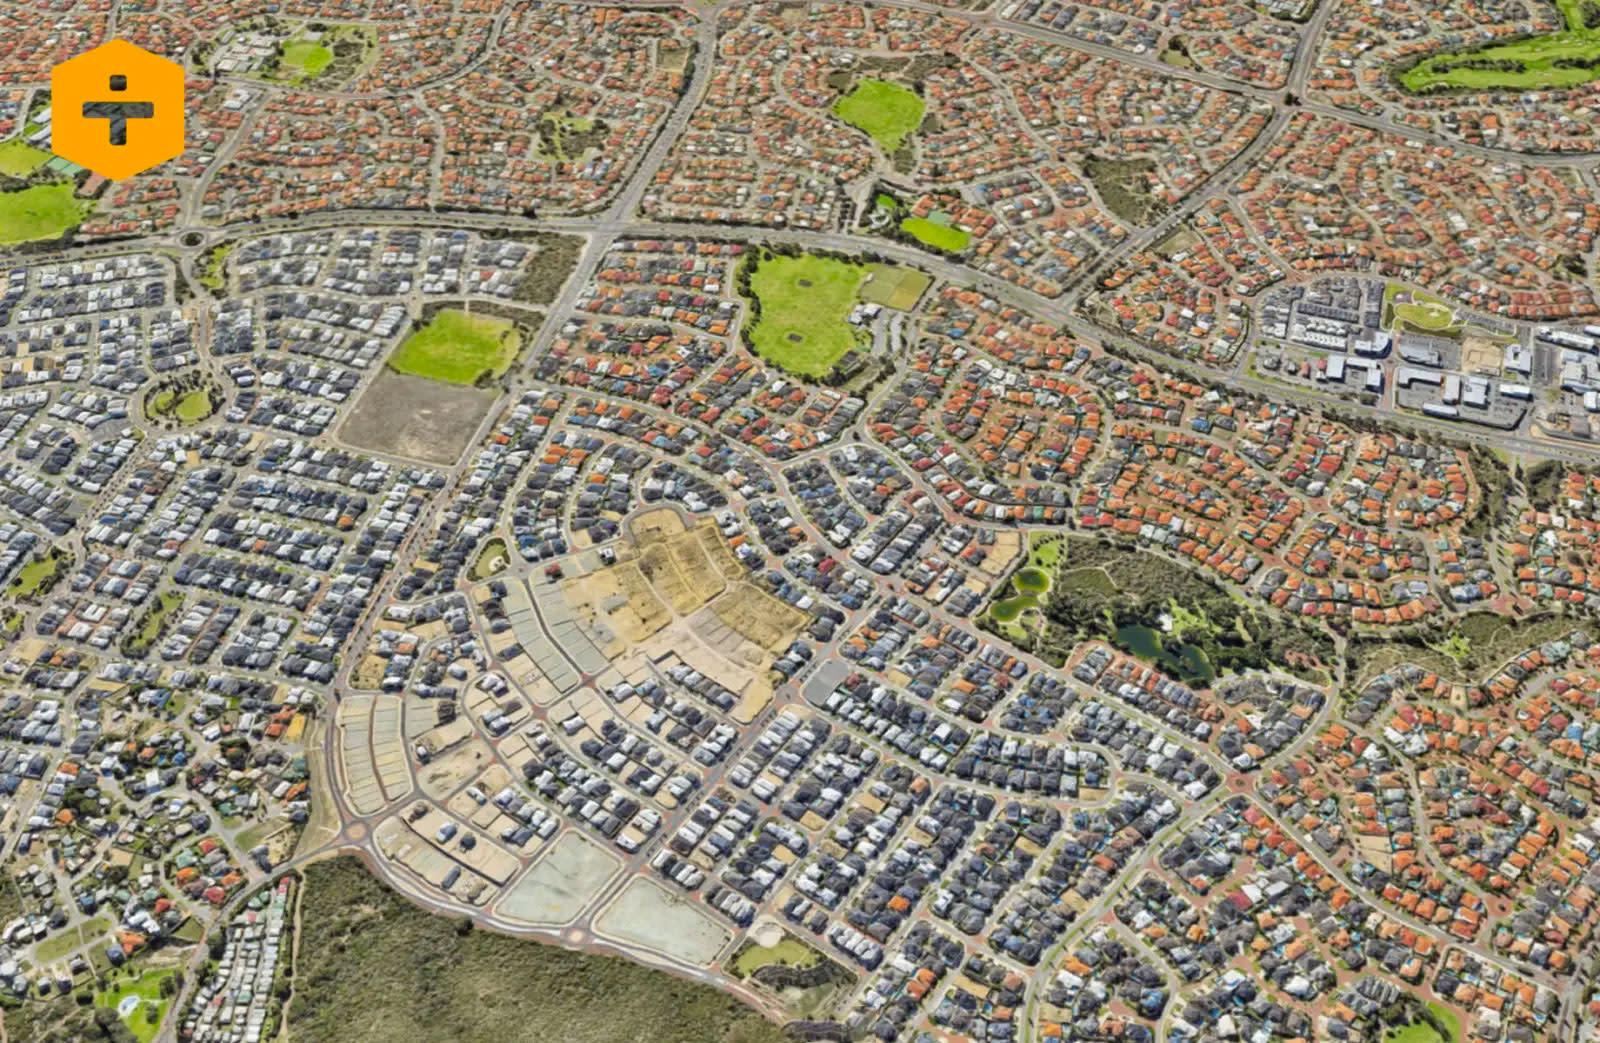 Urban Sprawl Australia development